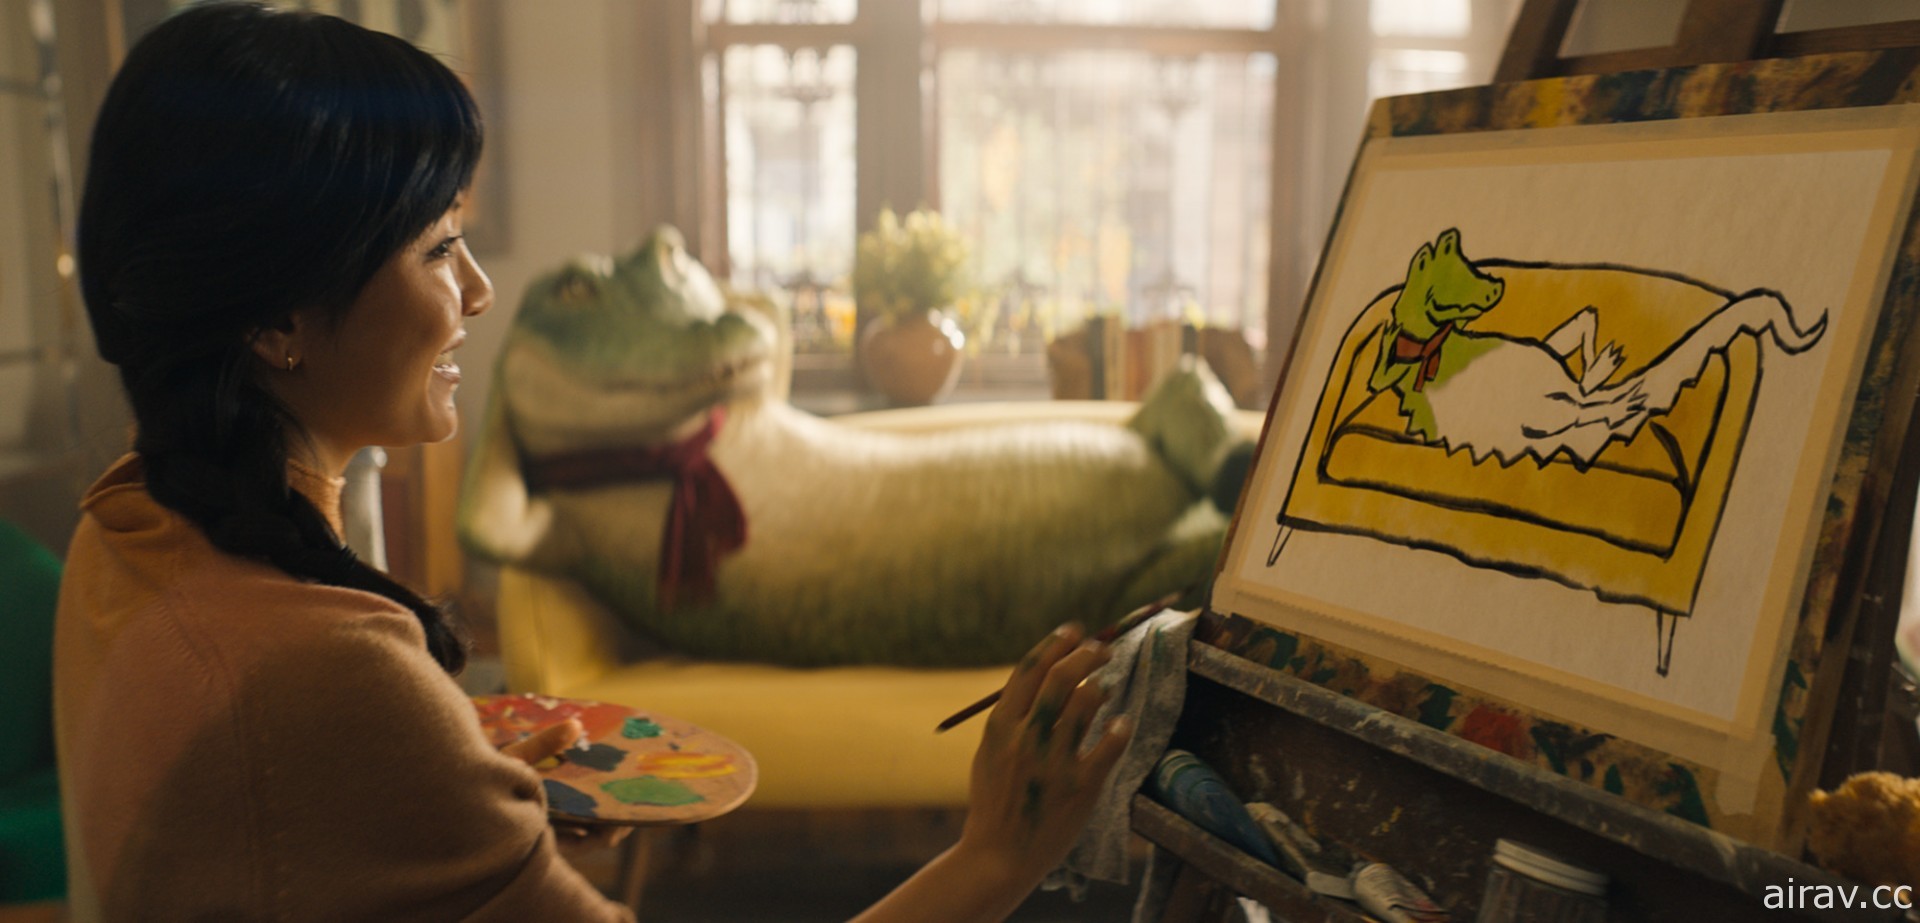 經典繪本改編《鱷魚歌王》釋出首部預告影片 電影預定 10 月在台上映